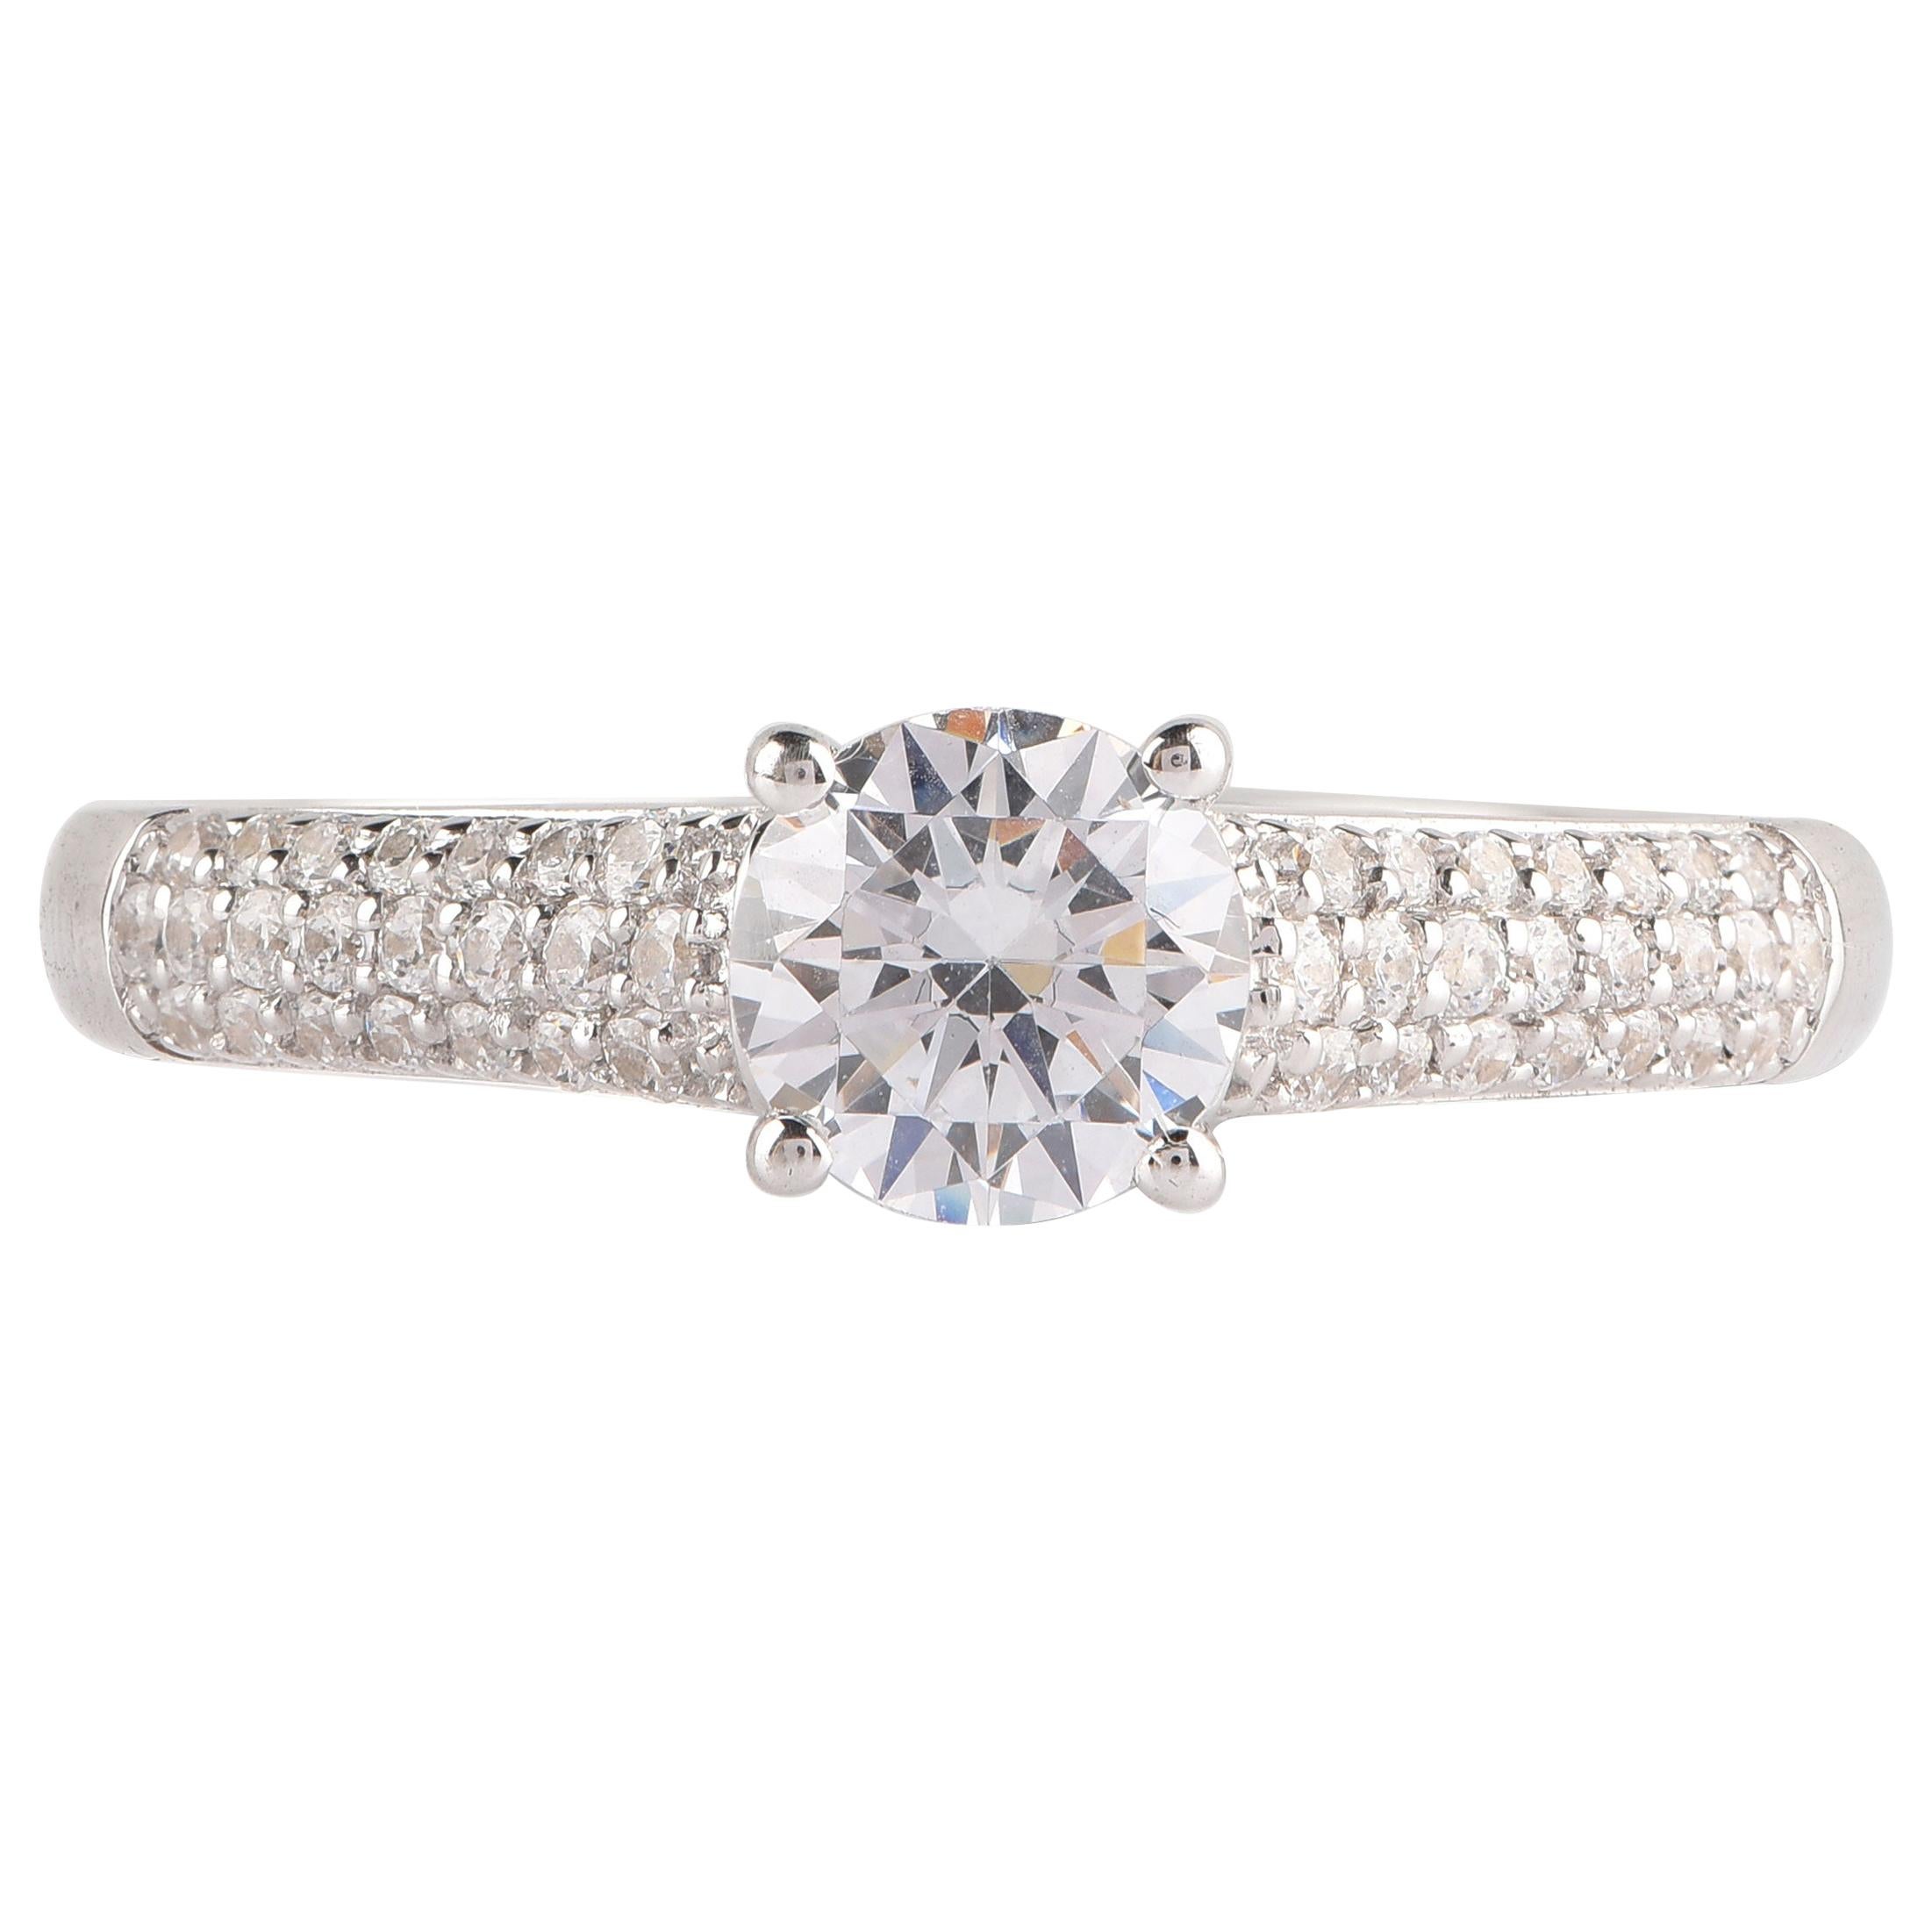 TJD GIA Certified 1.00 Carat Diamond 18 K White Gold Vintage Engagement Ring